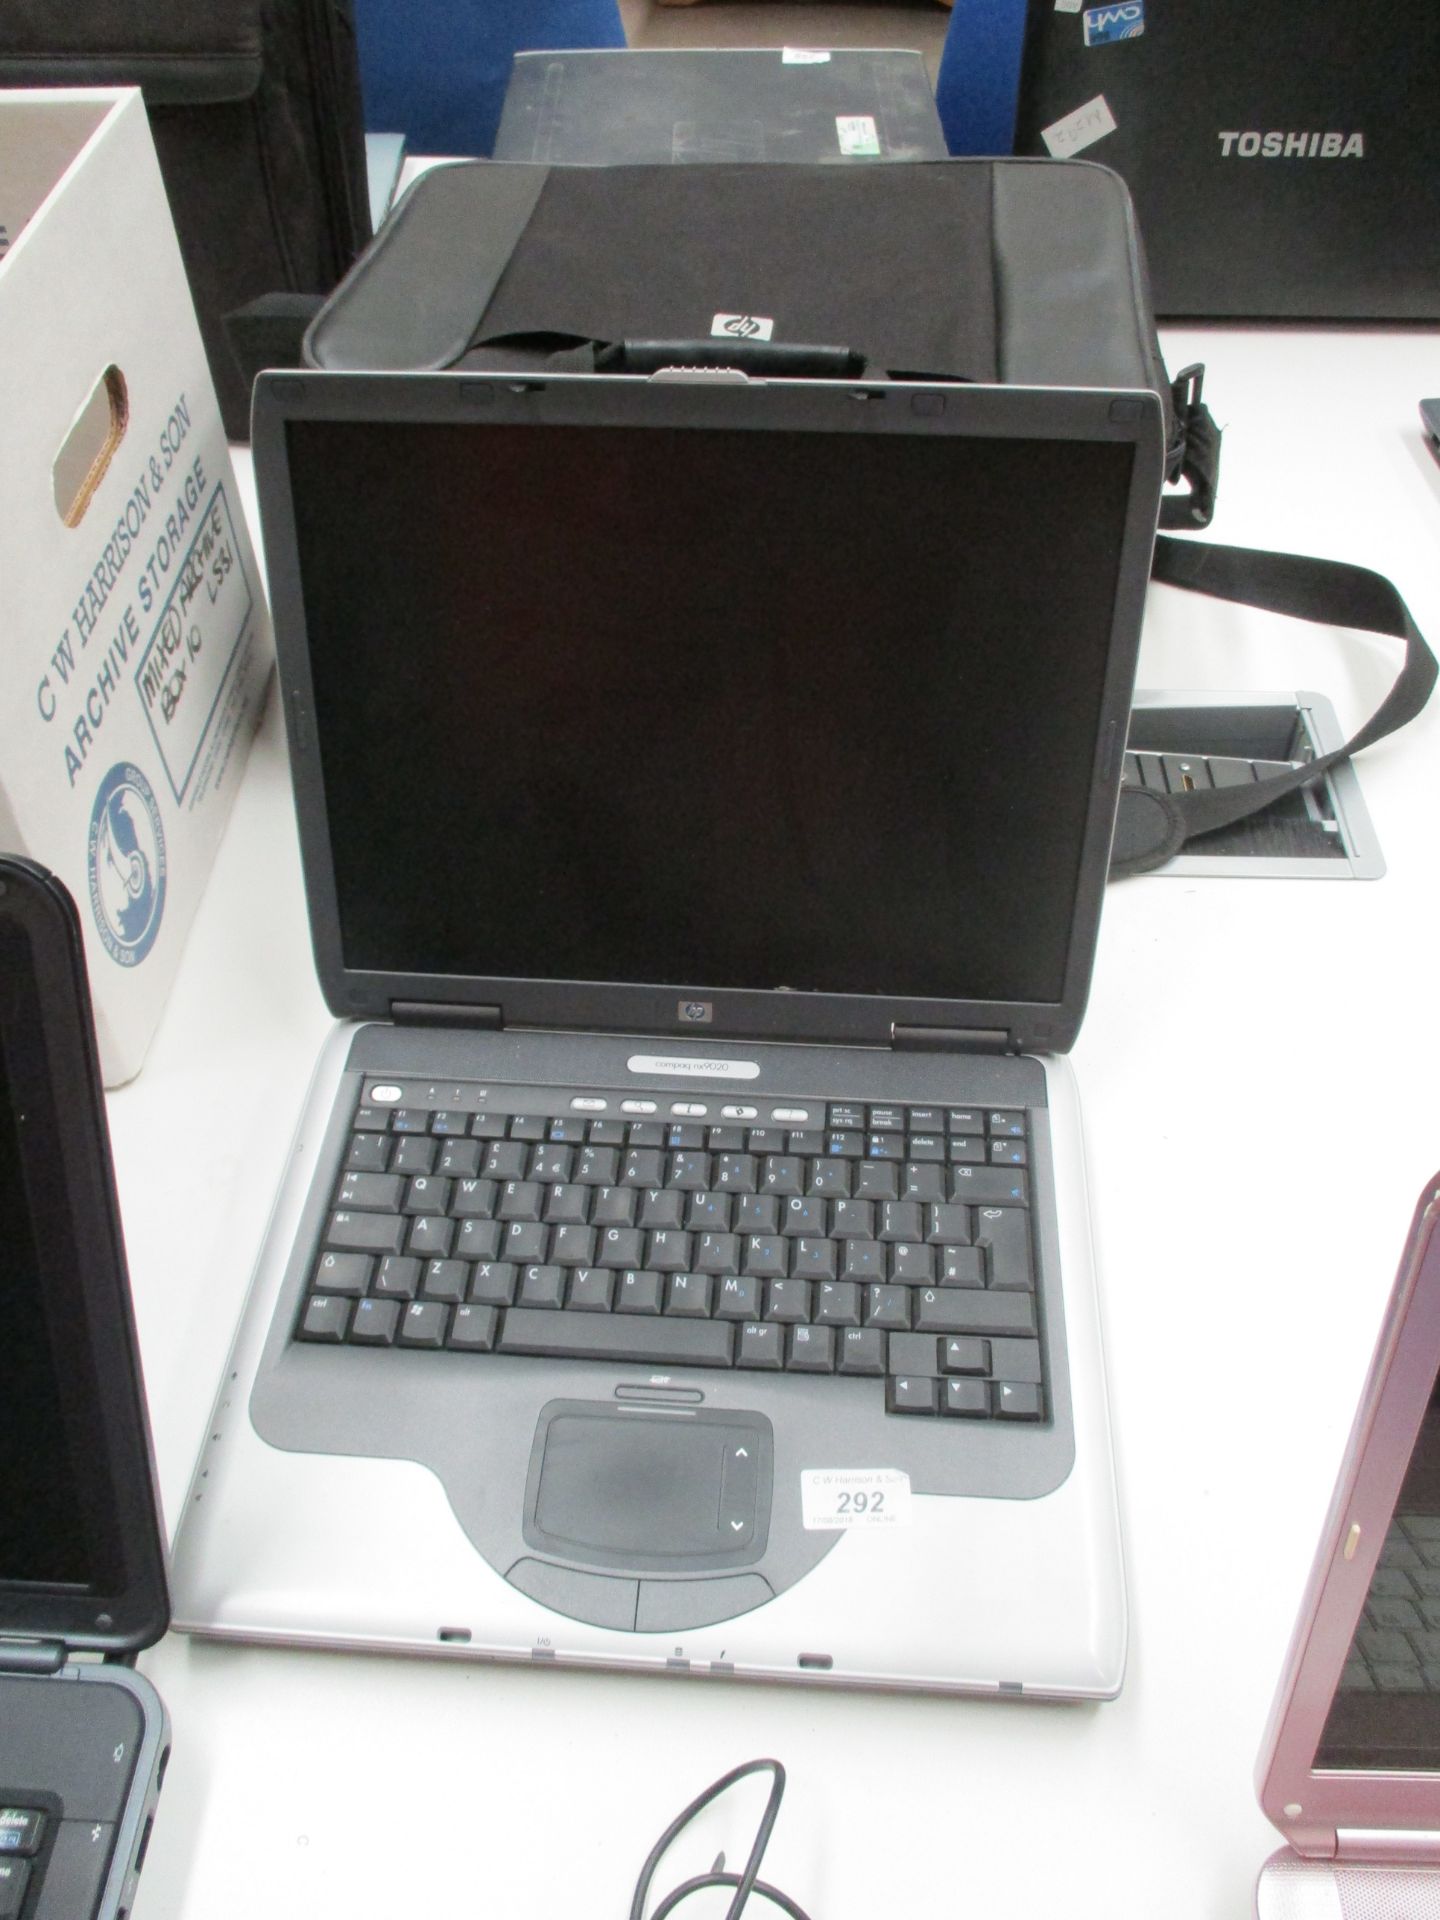 An HP Compaq NX9020 laptop computer - no power lead